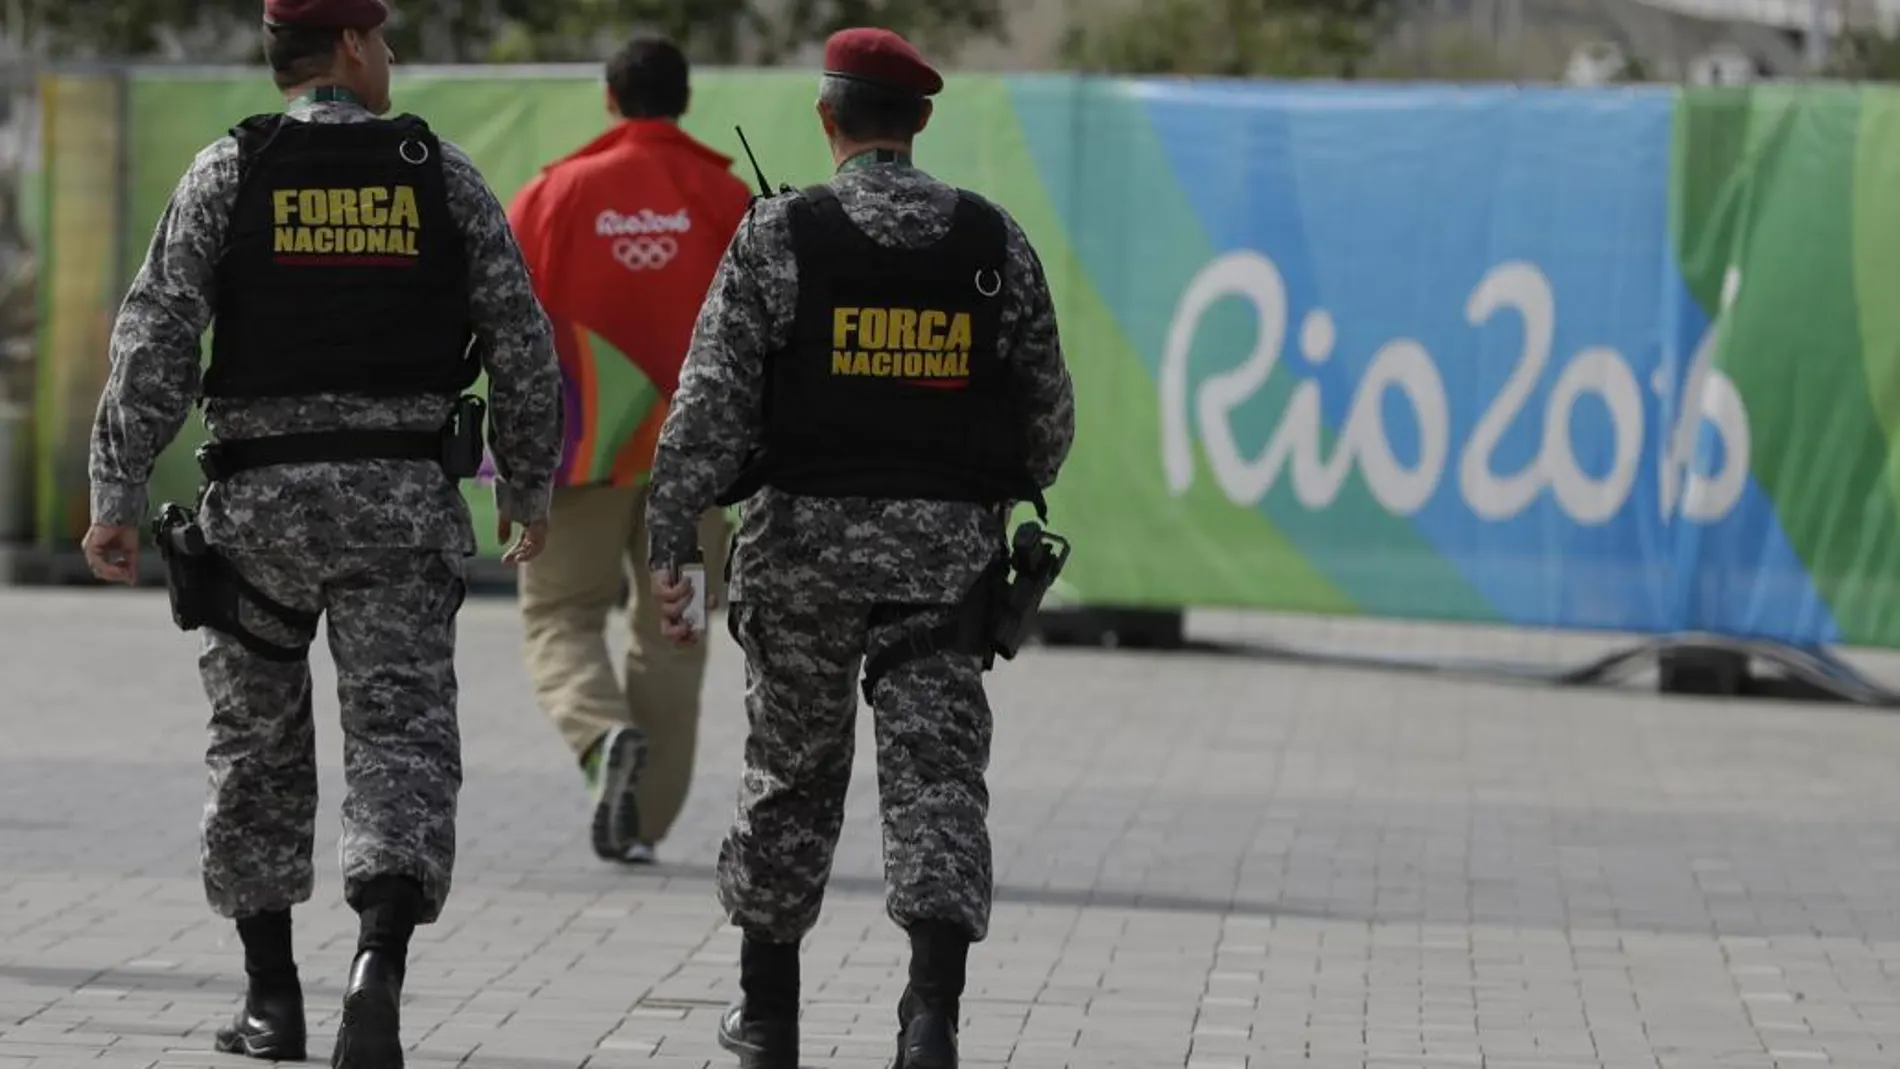 La Fuerzas de Seguridad y miembros del Ejército vigilan el parque Olímpico.